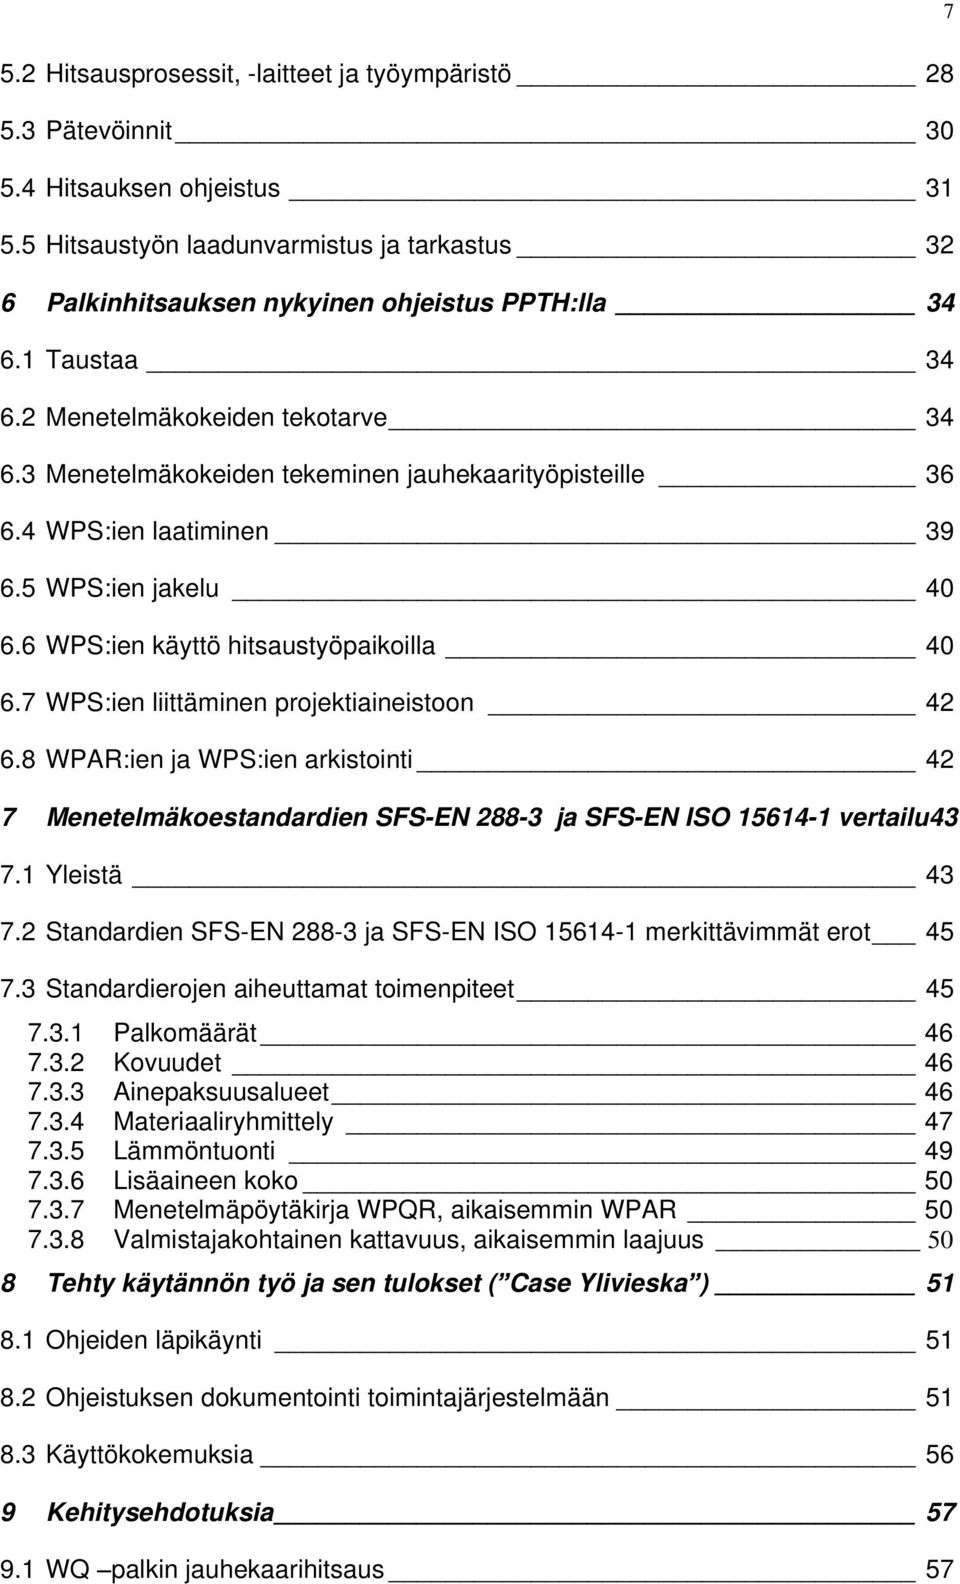 7 WPS:ien liittäminen projektiaineistoon 42 6.8 WPAR:ien ja WPS:ien arkistointi 42 7 Menetelmäkoestandardien SFS-EN 288-3 ja SFS-EN ISO 15614-1 vertailu43 7.1 Yleistä 43 7.